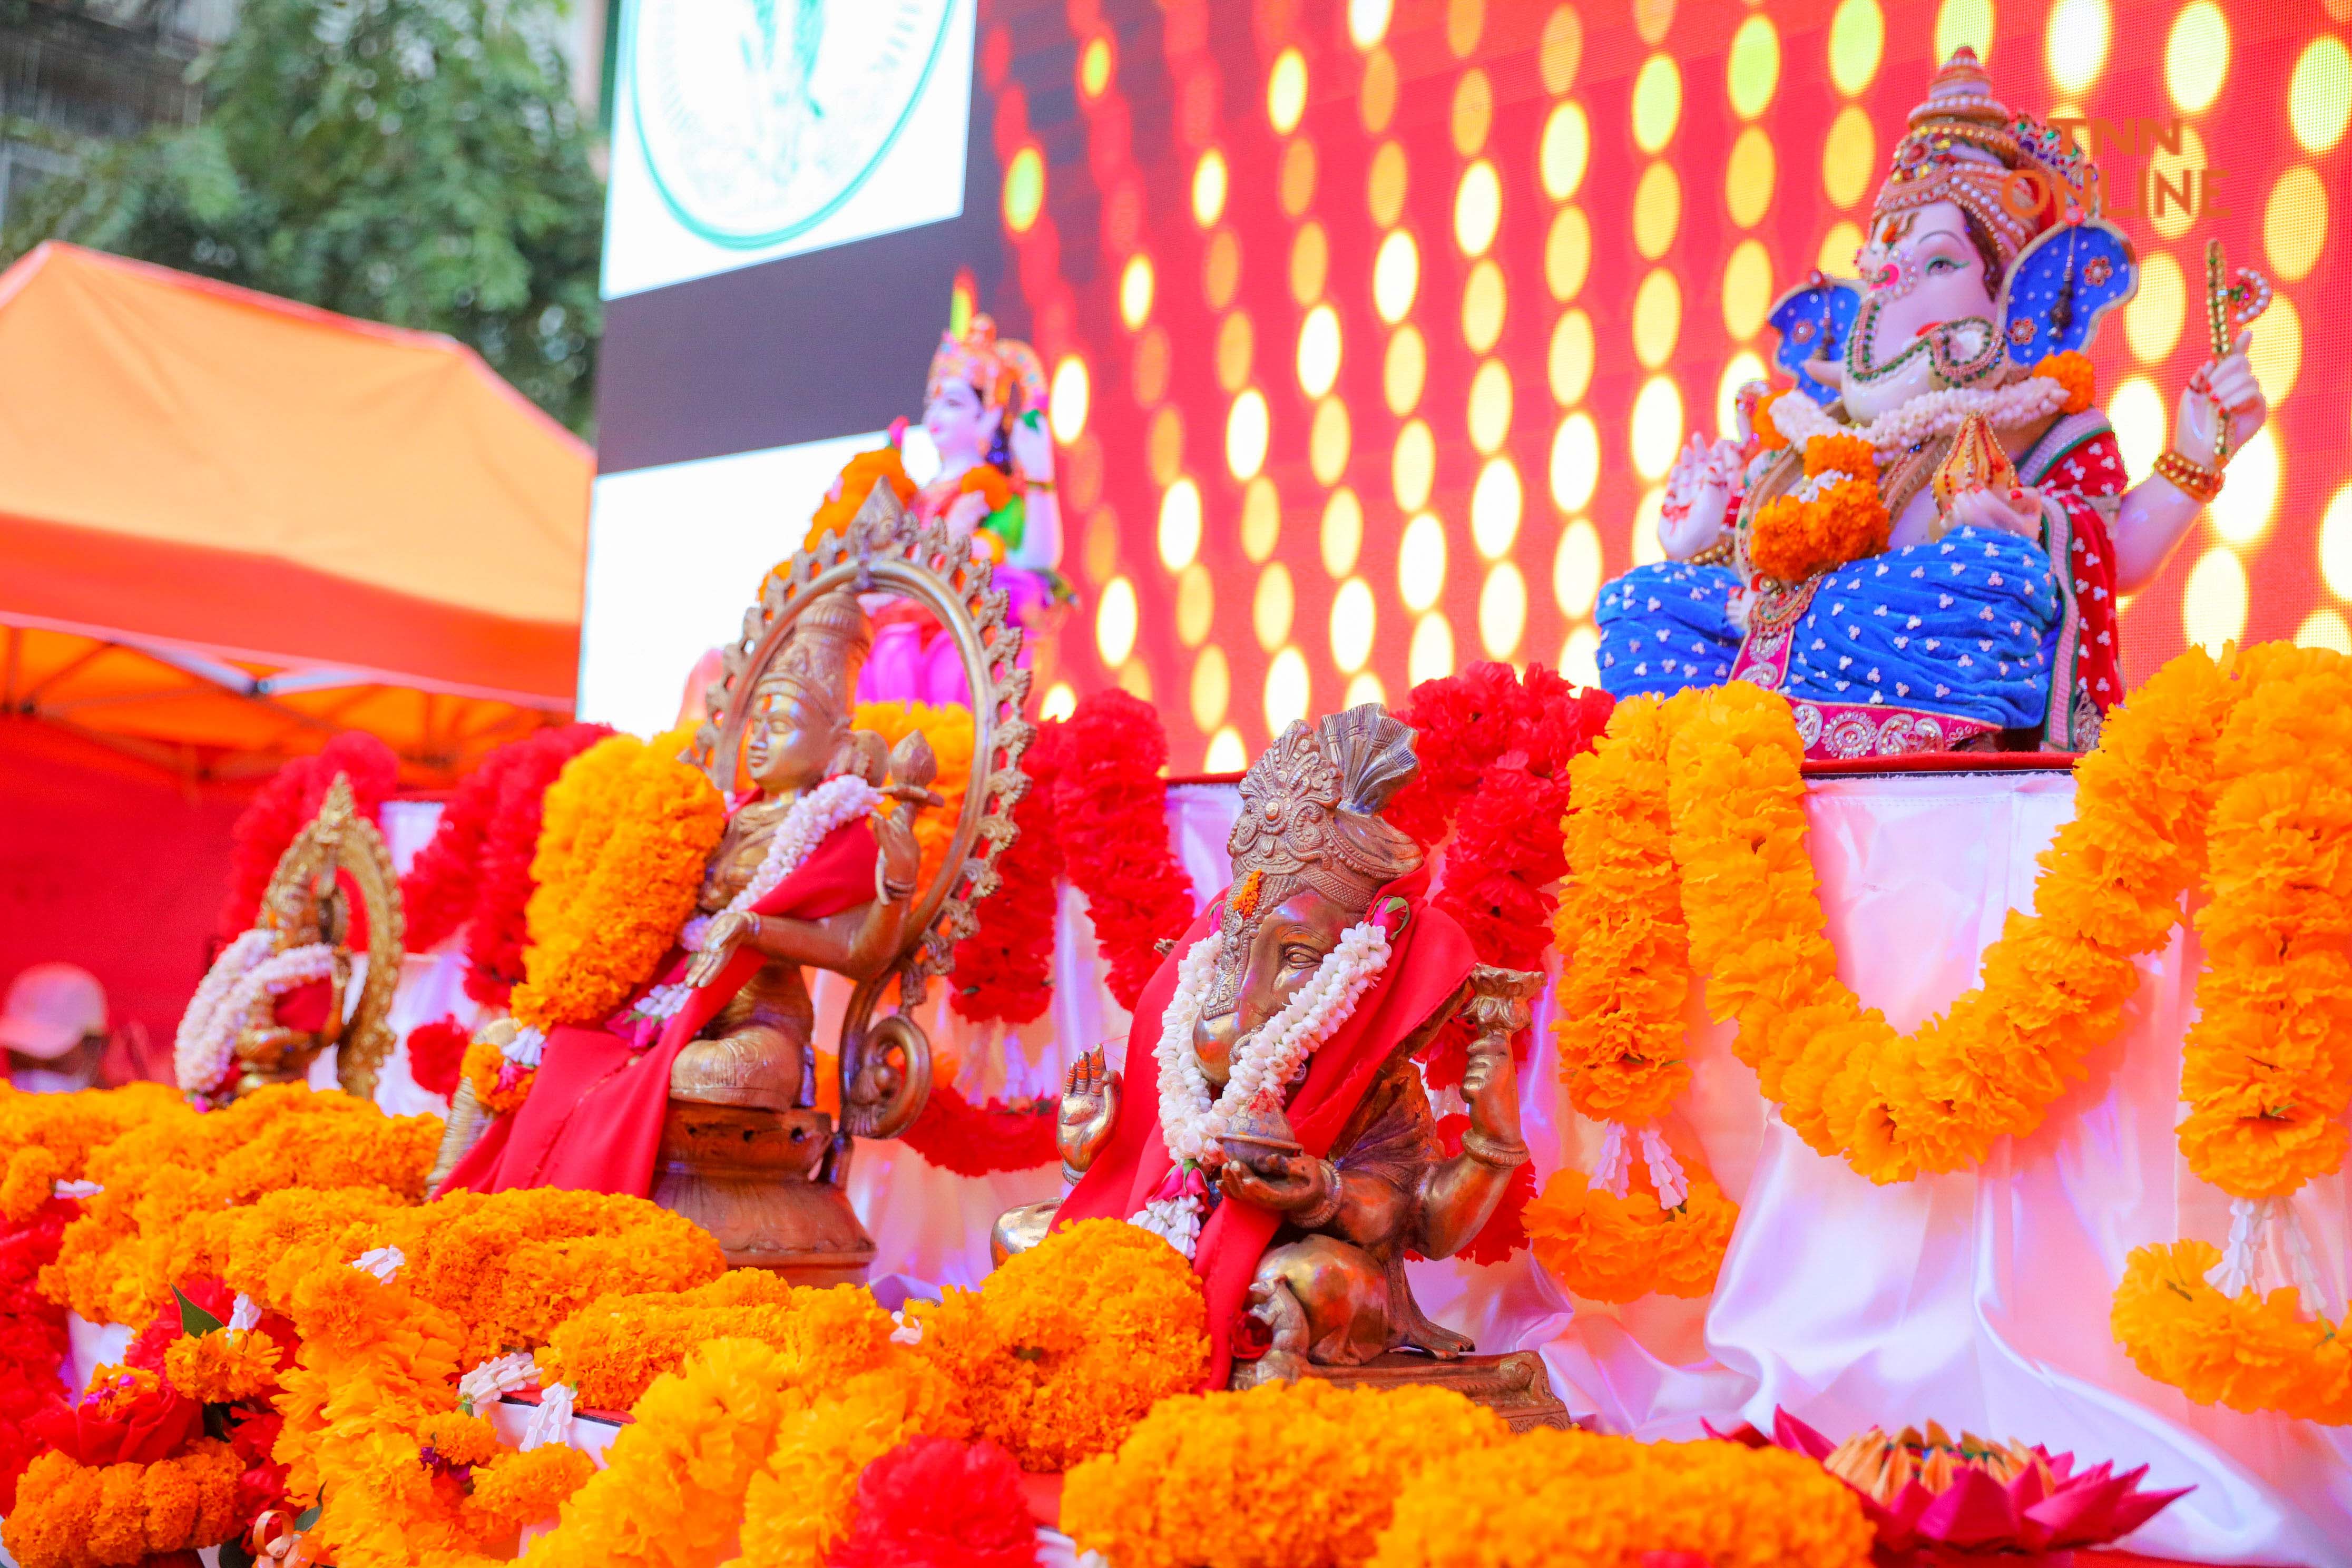 ชัชชาติเปิดงาน “ดิวาลีเฟสติวัล” ฉลองเทศกาลแห่งแสงสว่างของชาวอินเดียในไทย